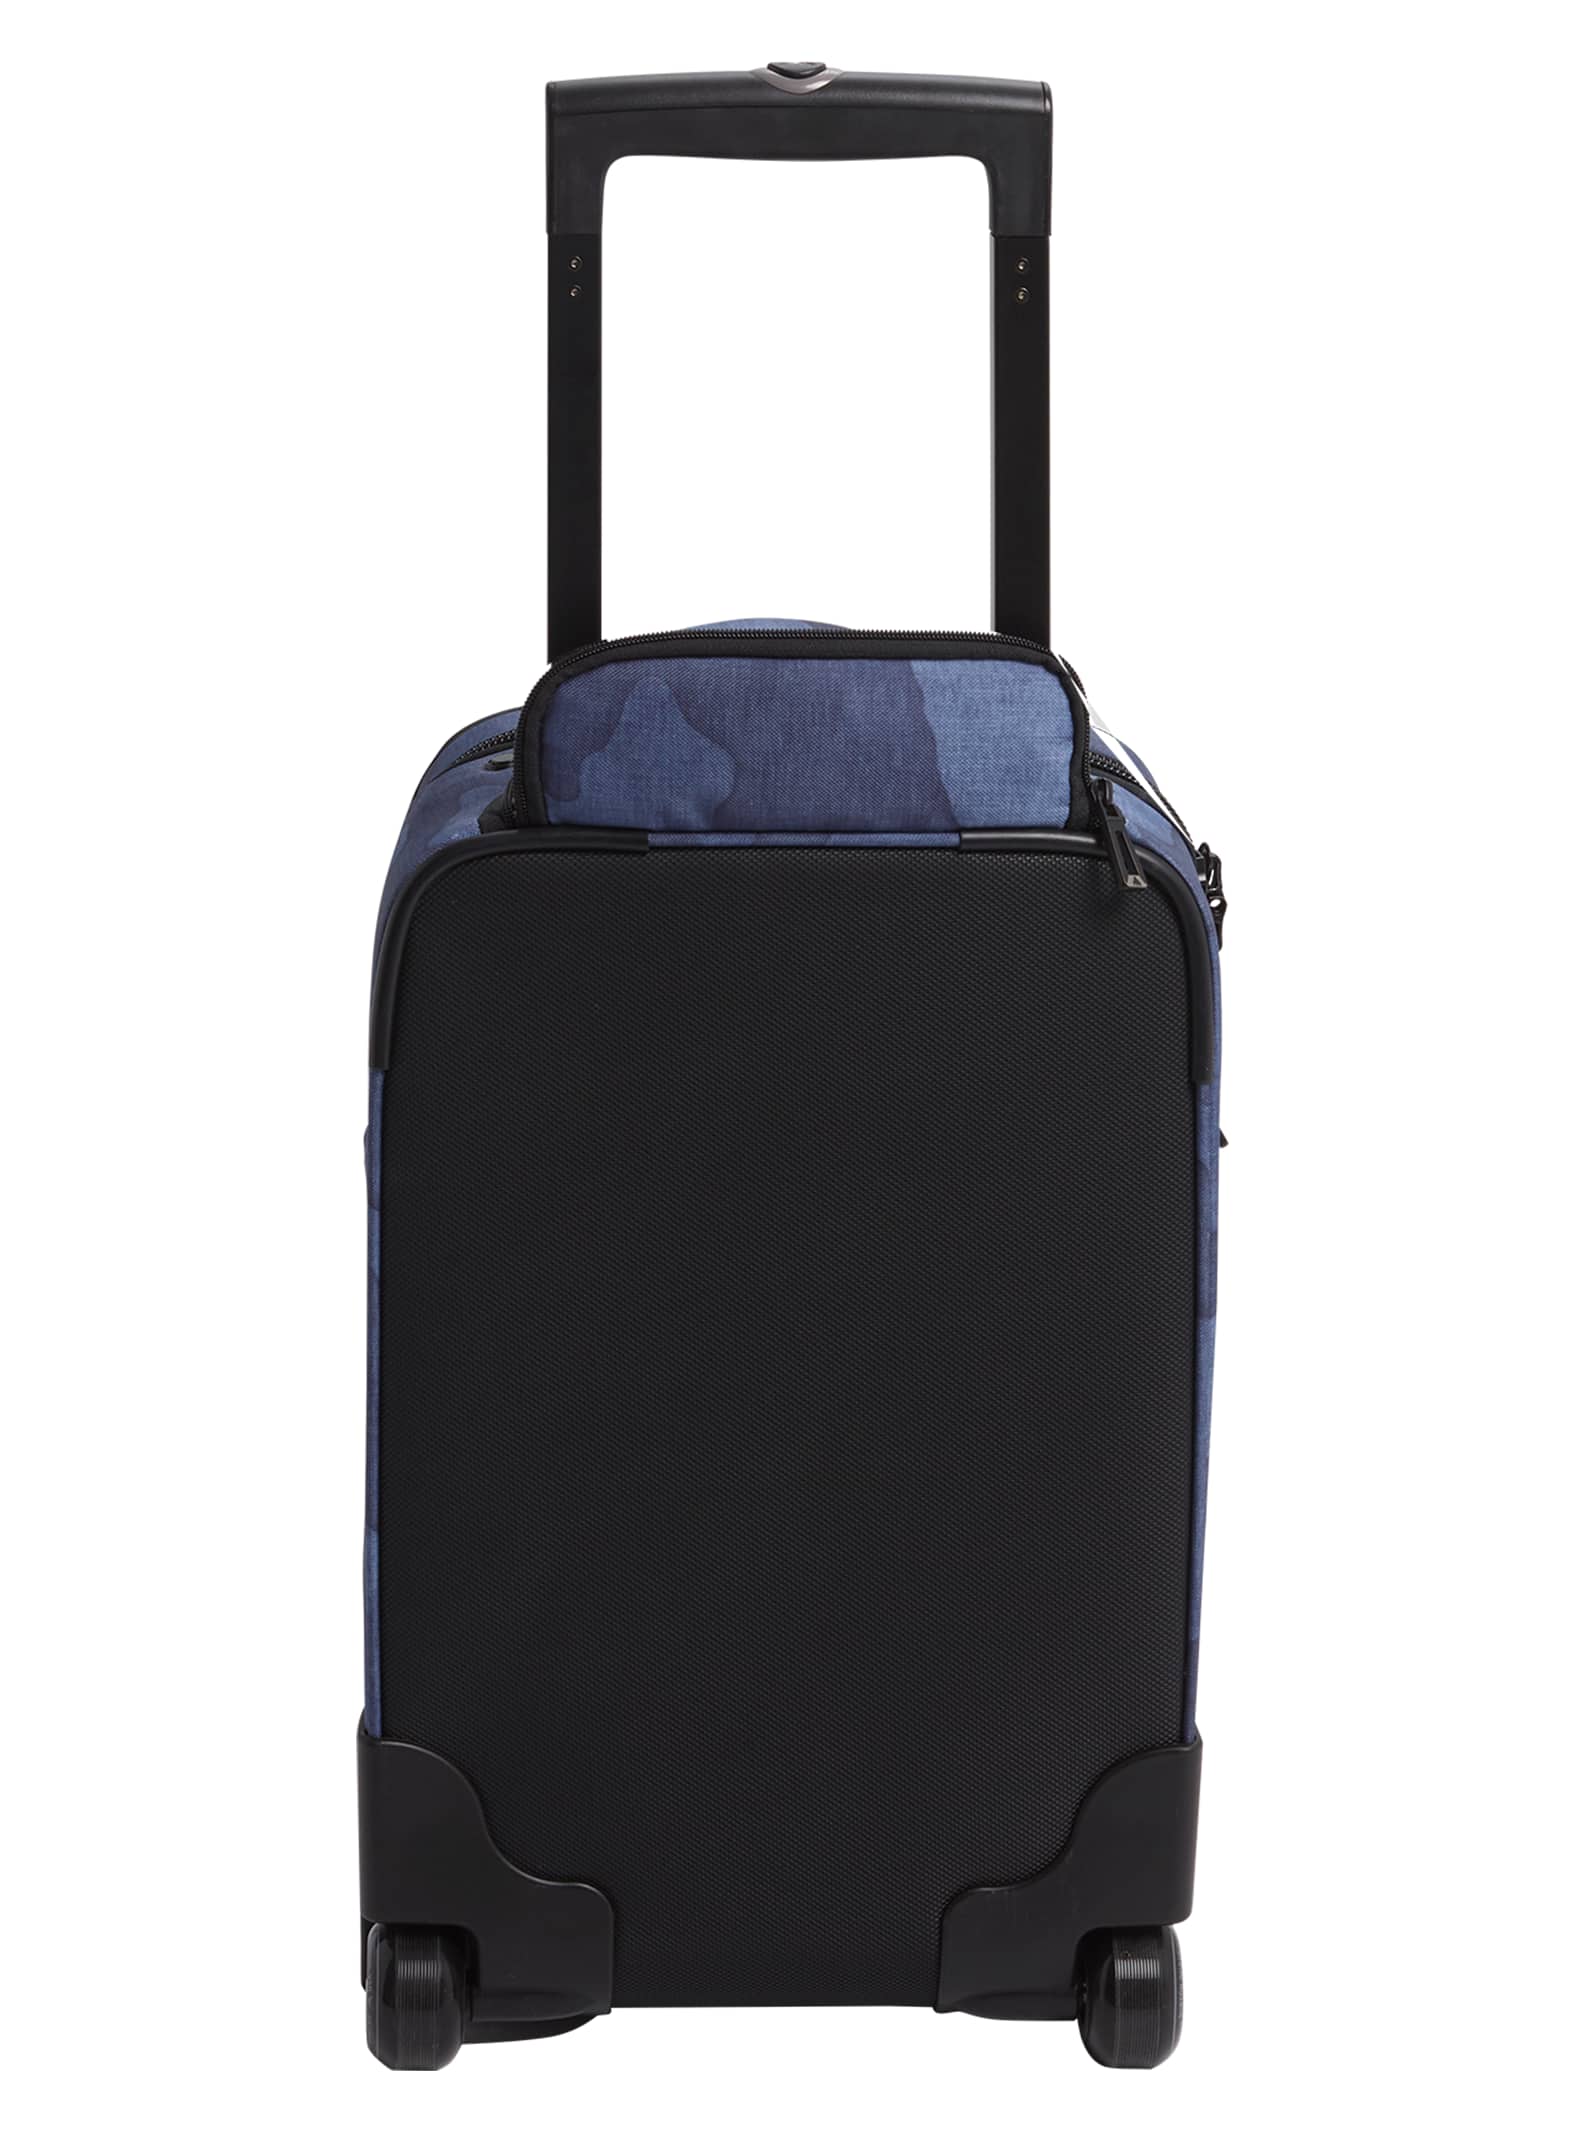 Burton Wheelie Flyer Travel Bag | Burton.com Fall 2019 CA